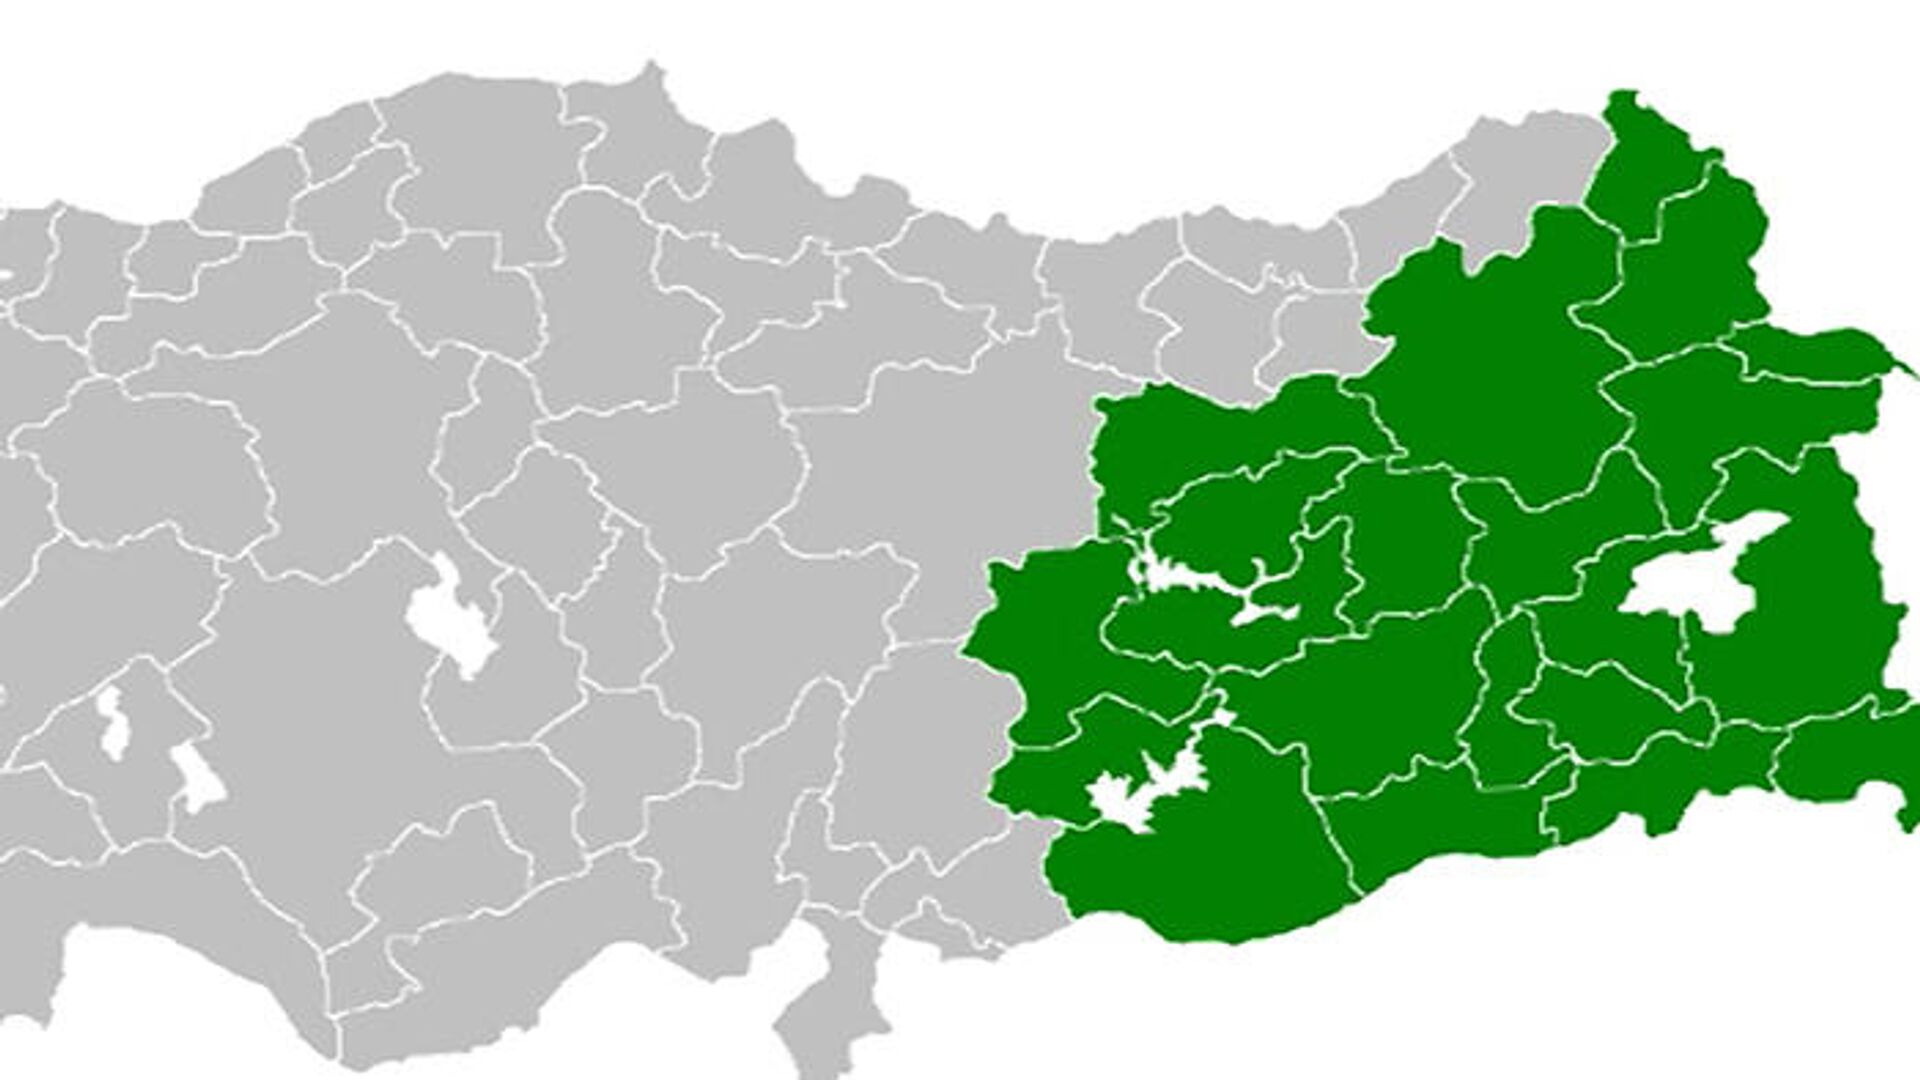 Ժամանակակից Թուրքիայի այն տարածքը, որտեղ ավելի շատ հայեր ու քրդեր են բնակվում - Sputnik Արմենիա, 1920, 17.02.2022